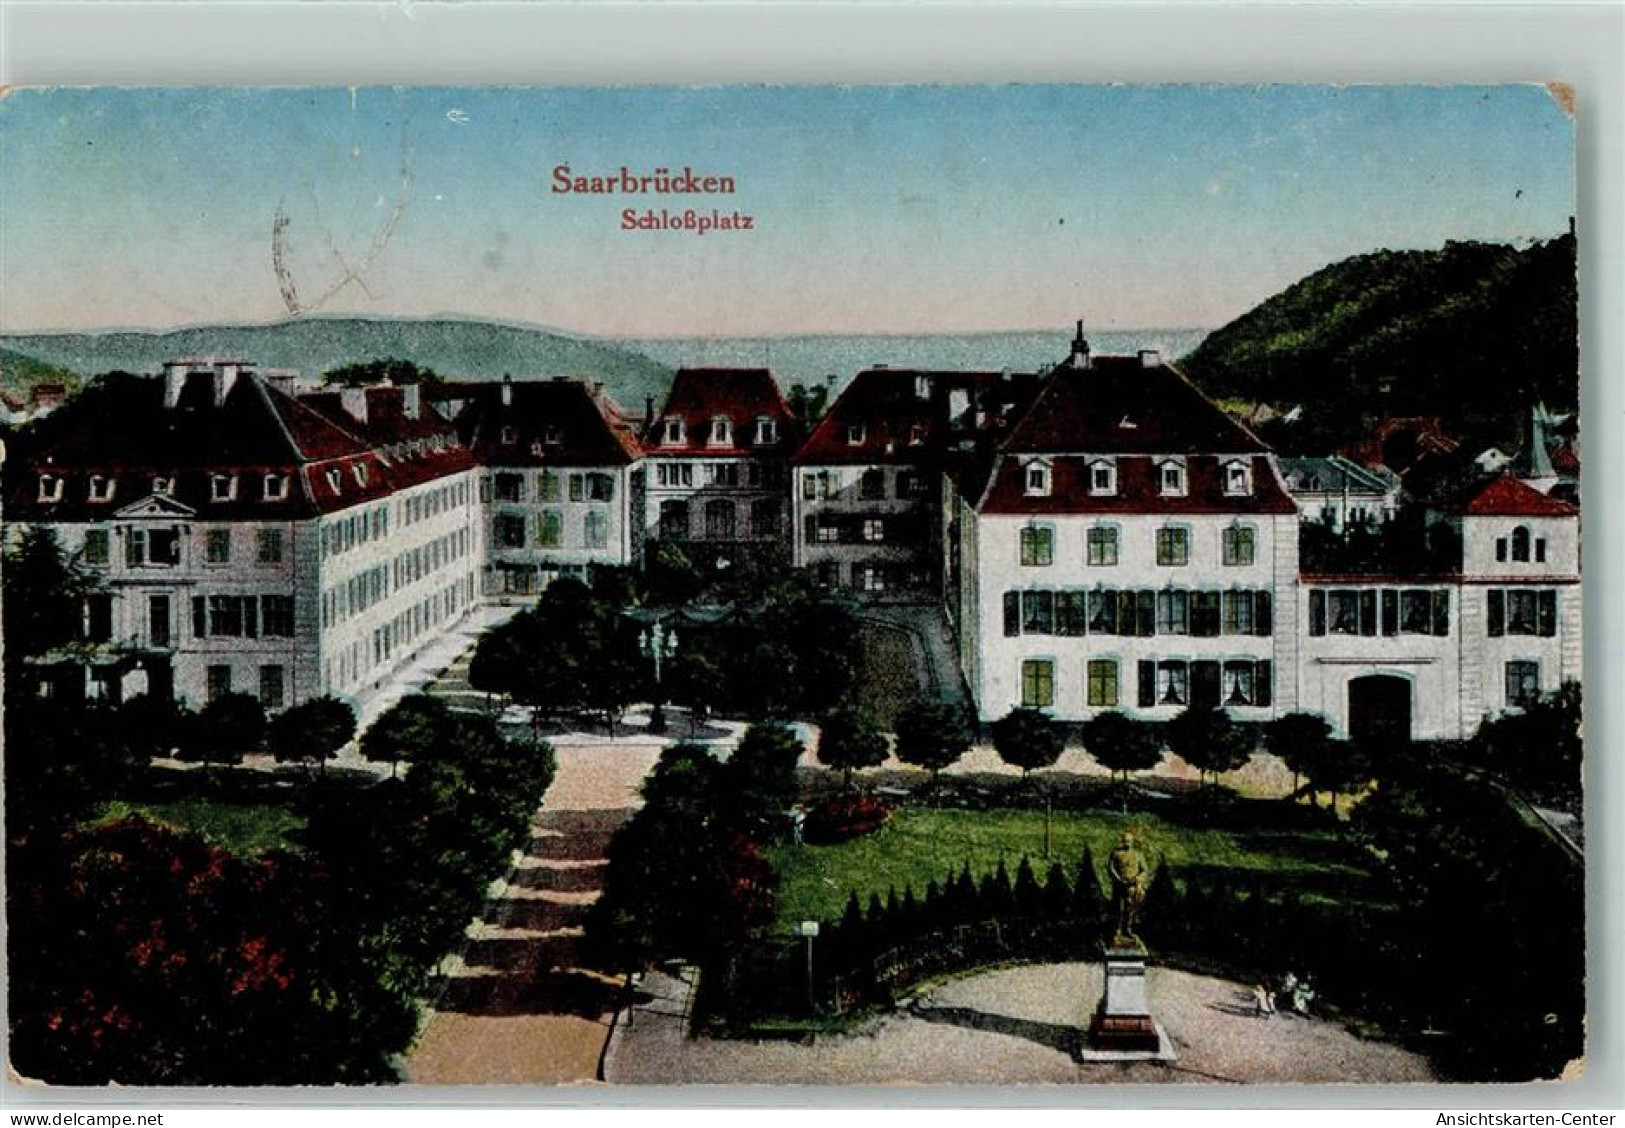 10487207 - Saarbruecken - Saarbrücken